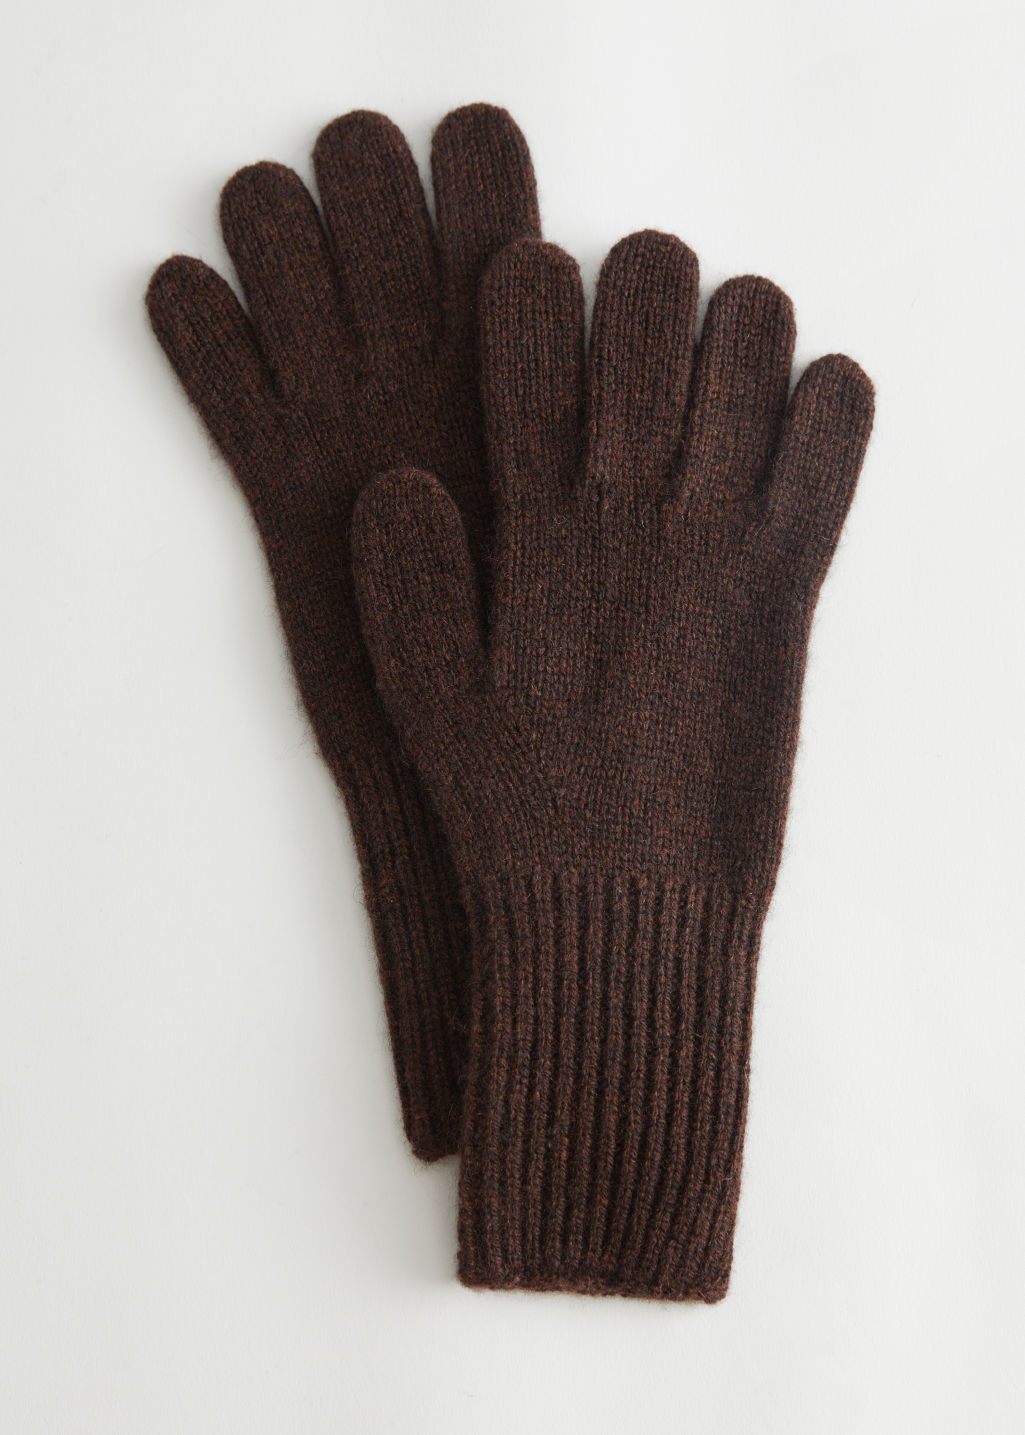 Bruine handschoenen